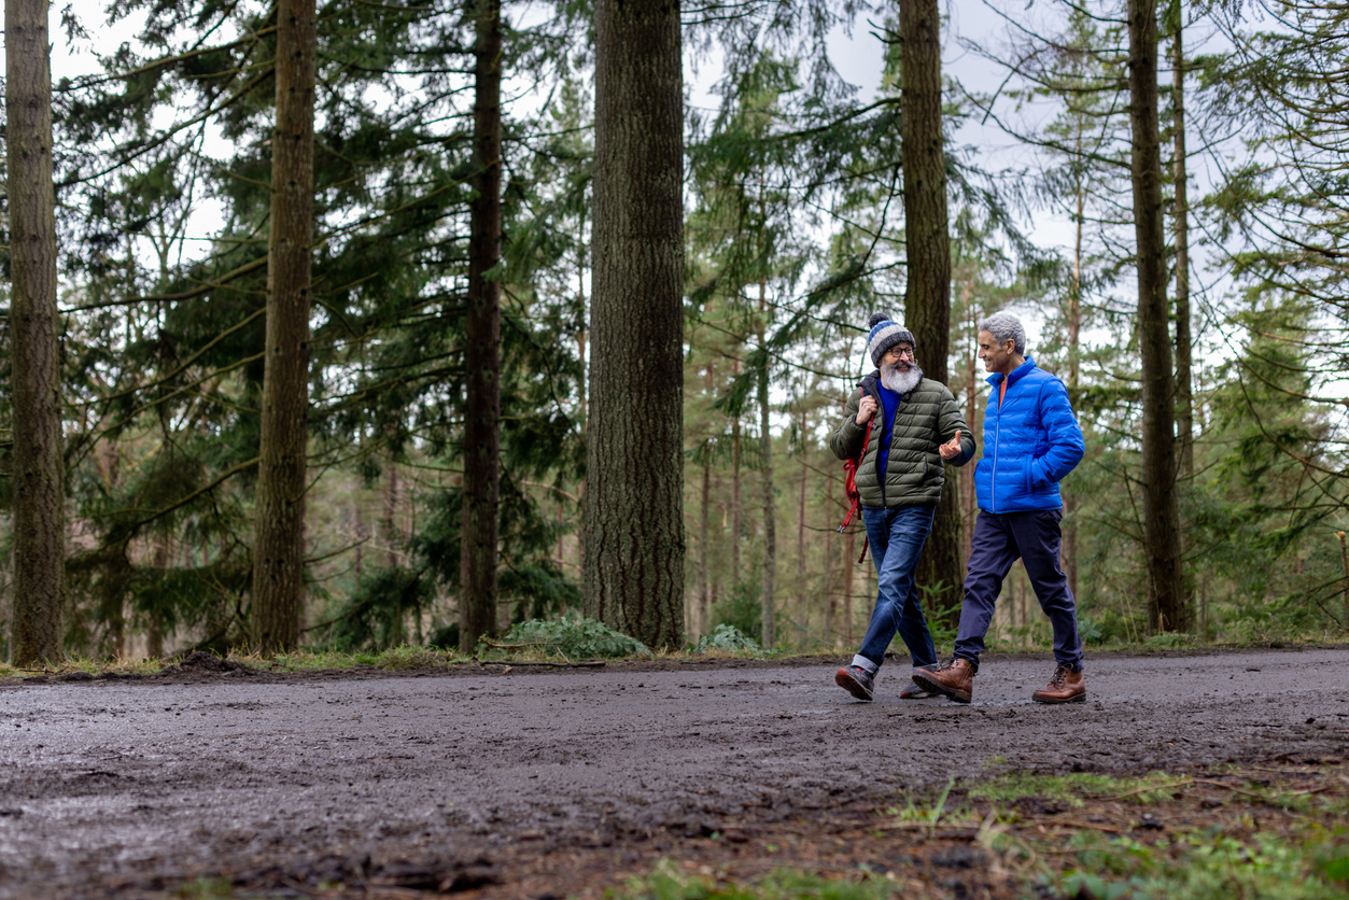 Um passeio pela natureza ajuda a recuperar a fadiga mental, de acordo com um estudo